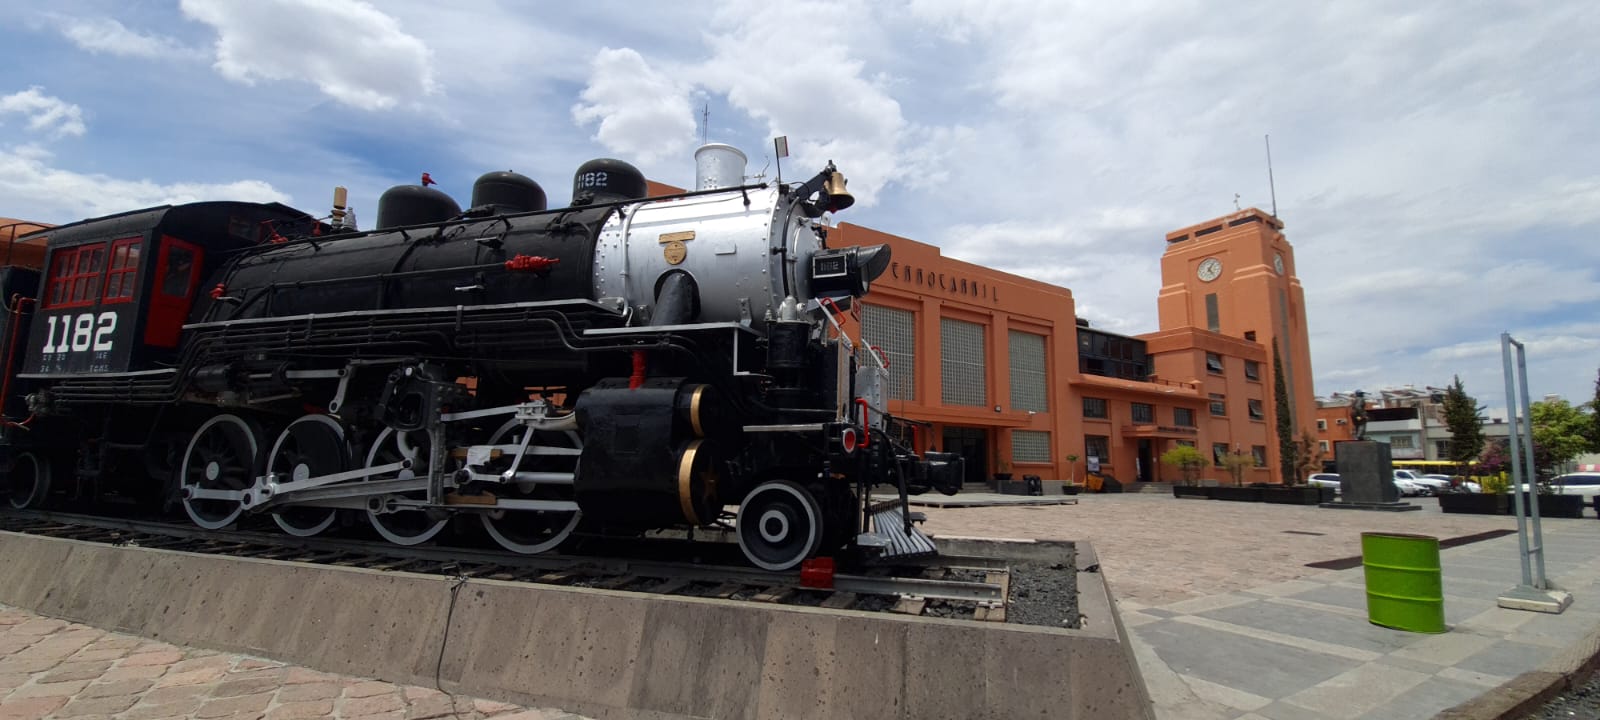 Inician jornadas de historia de México en el Museo del Ferrocarril